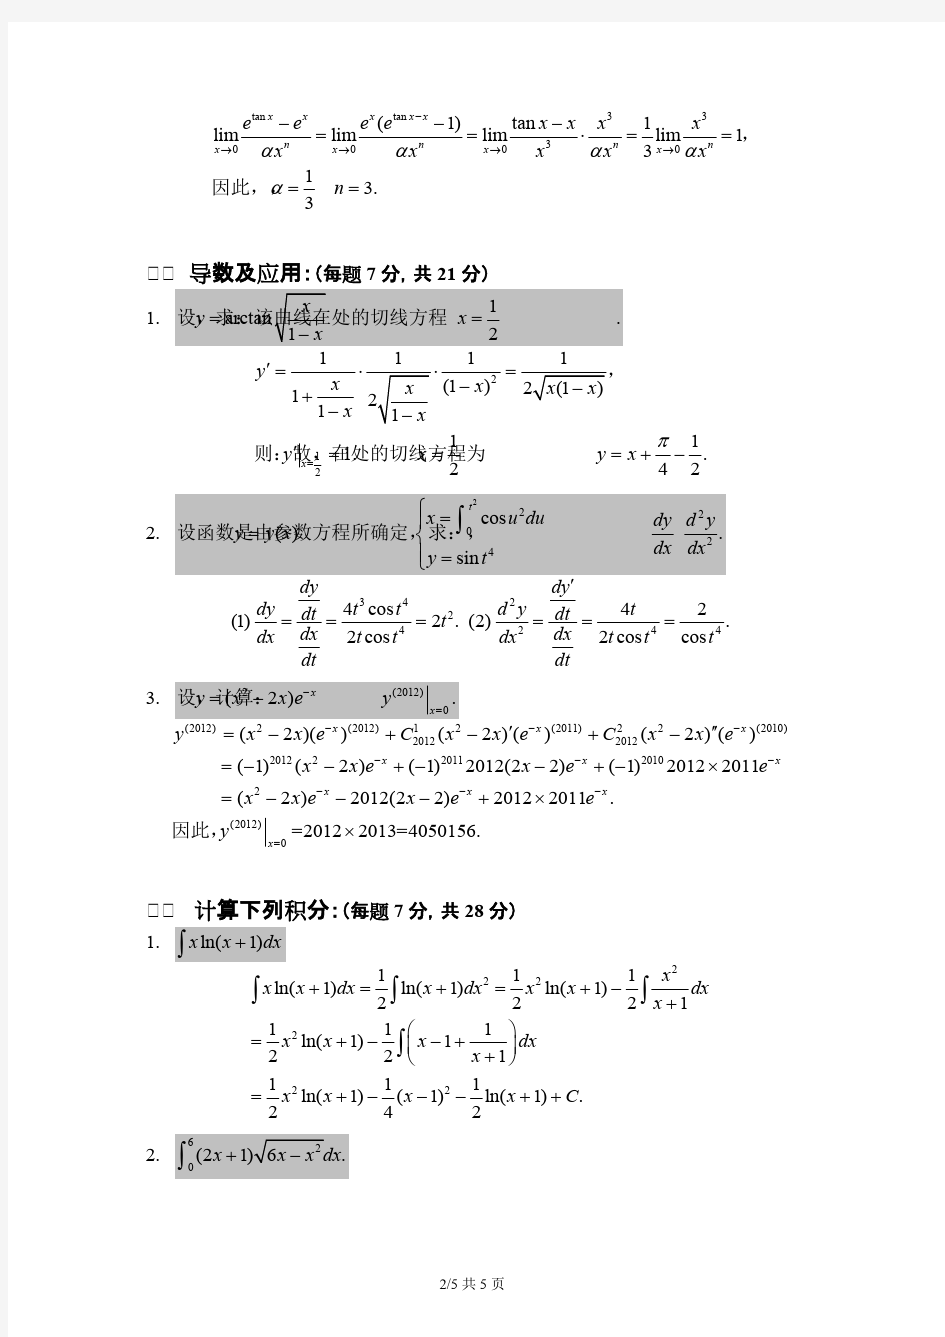 浙江大学-数学分析(1)-试卷及答案(baidu),推荐文档